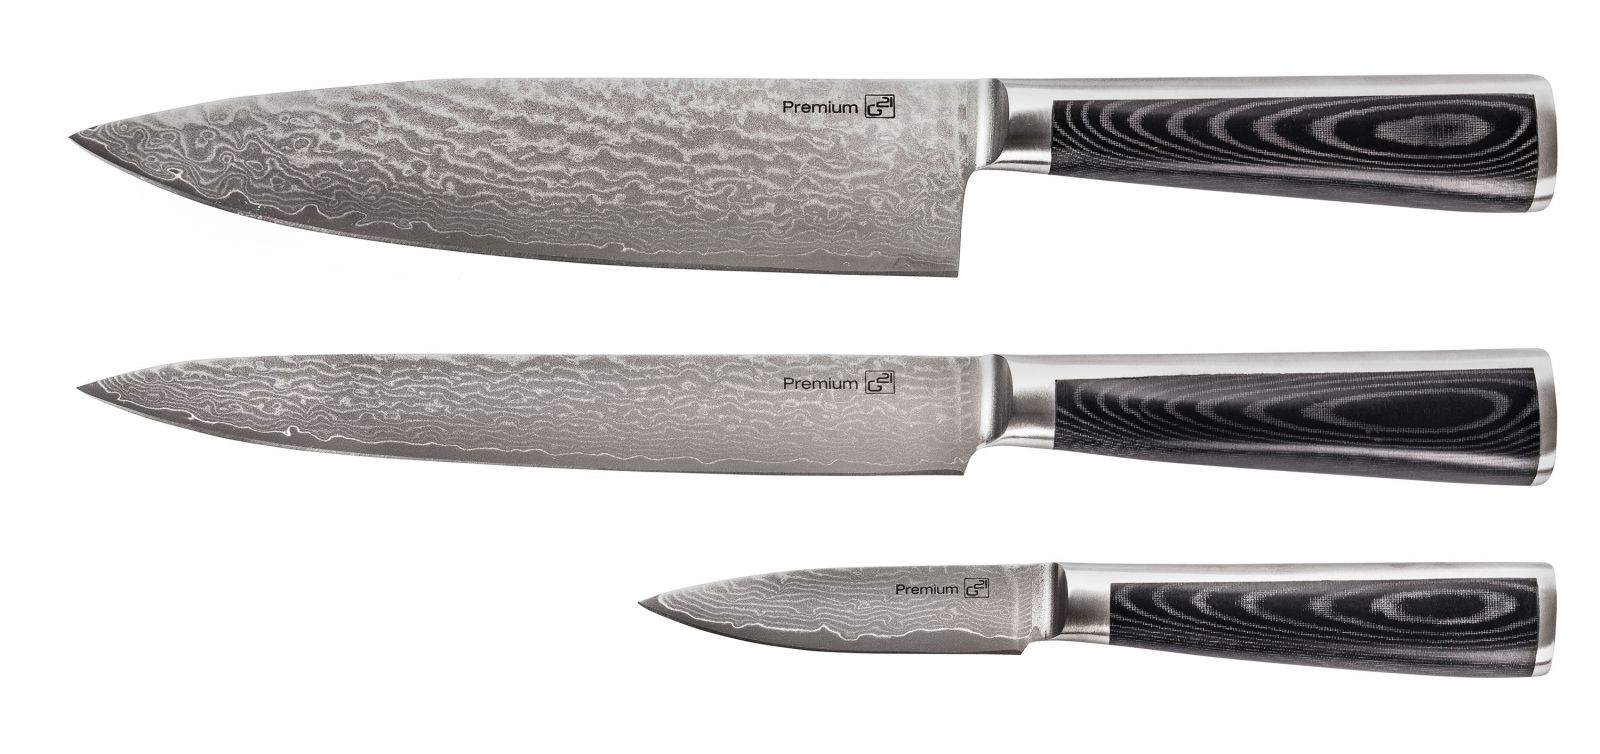 Sada 3 nožů Damascus Premium v dárkovém balení